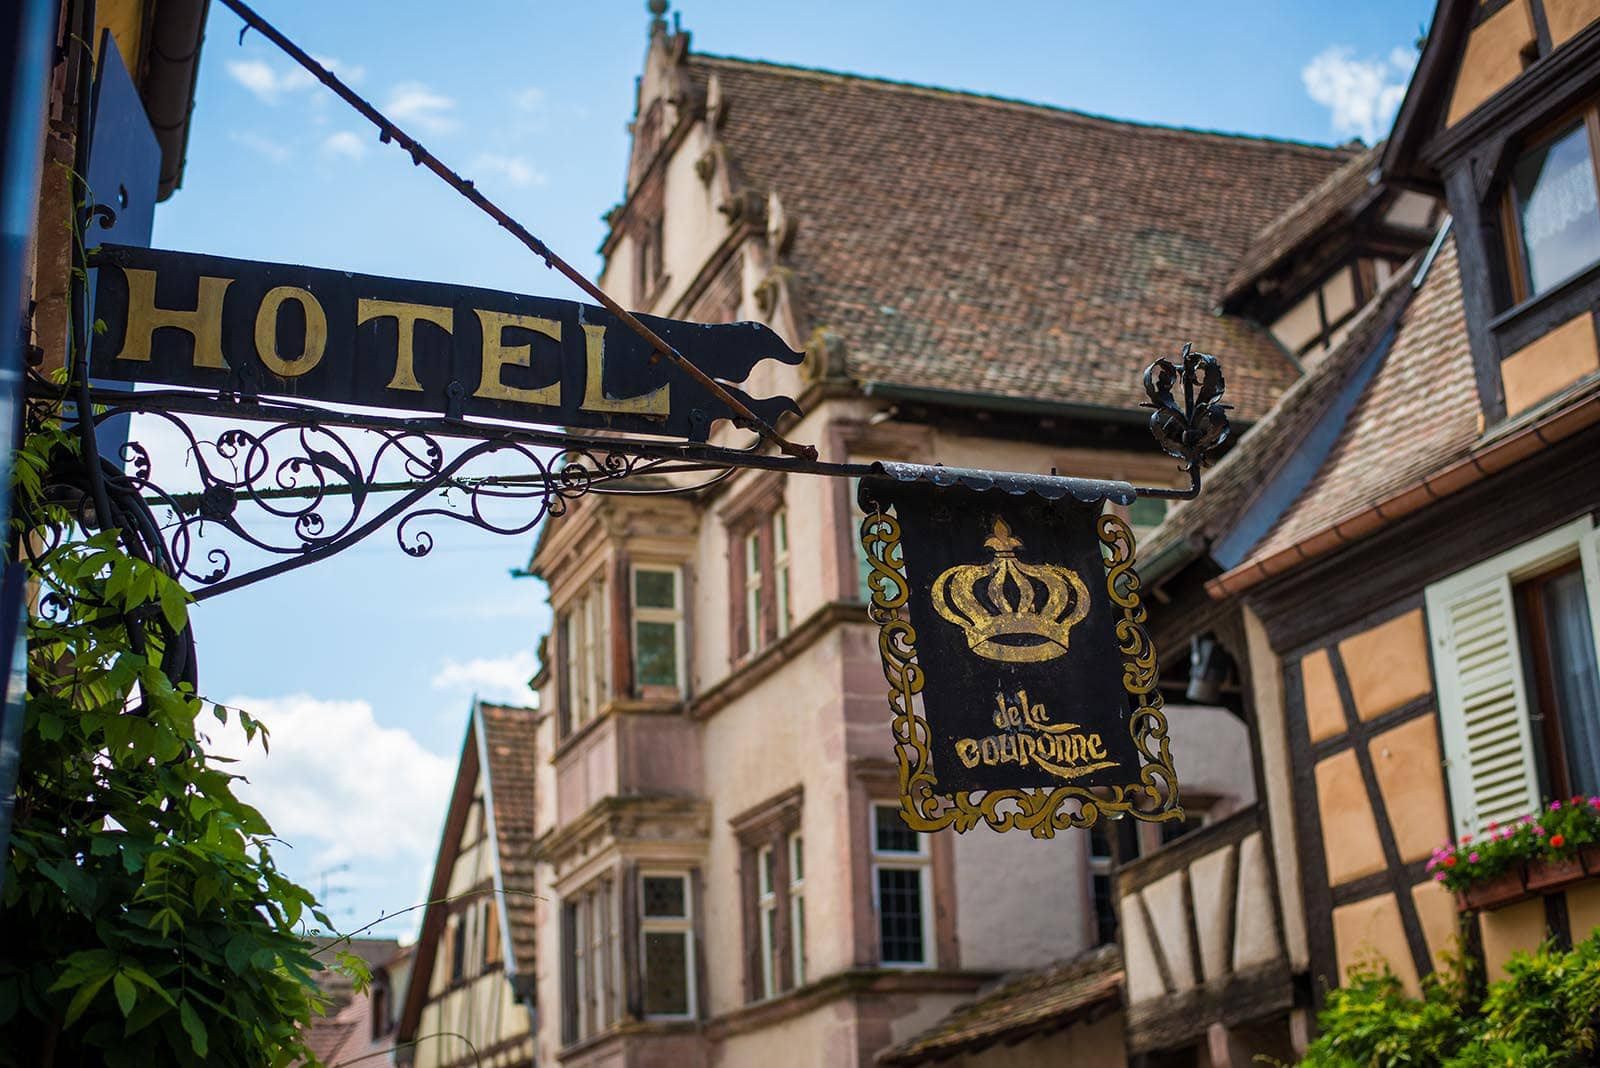 Hotel La Couronne in Riquewihr, ein charmantes Hotel an der Elsässer Weinstraße, im Herzen der Weinberge und eines mittelalterlichen Dorfes.